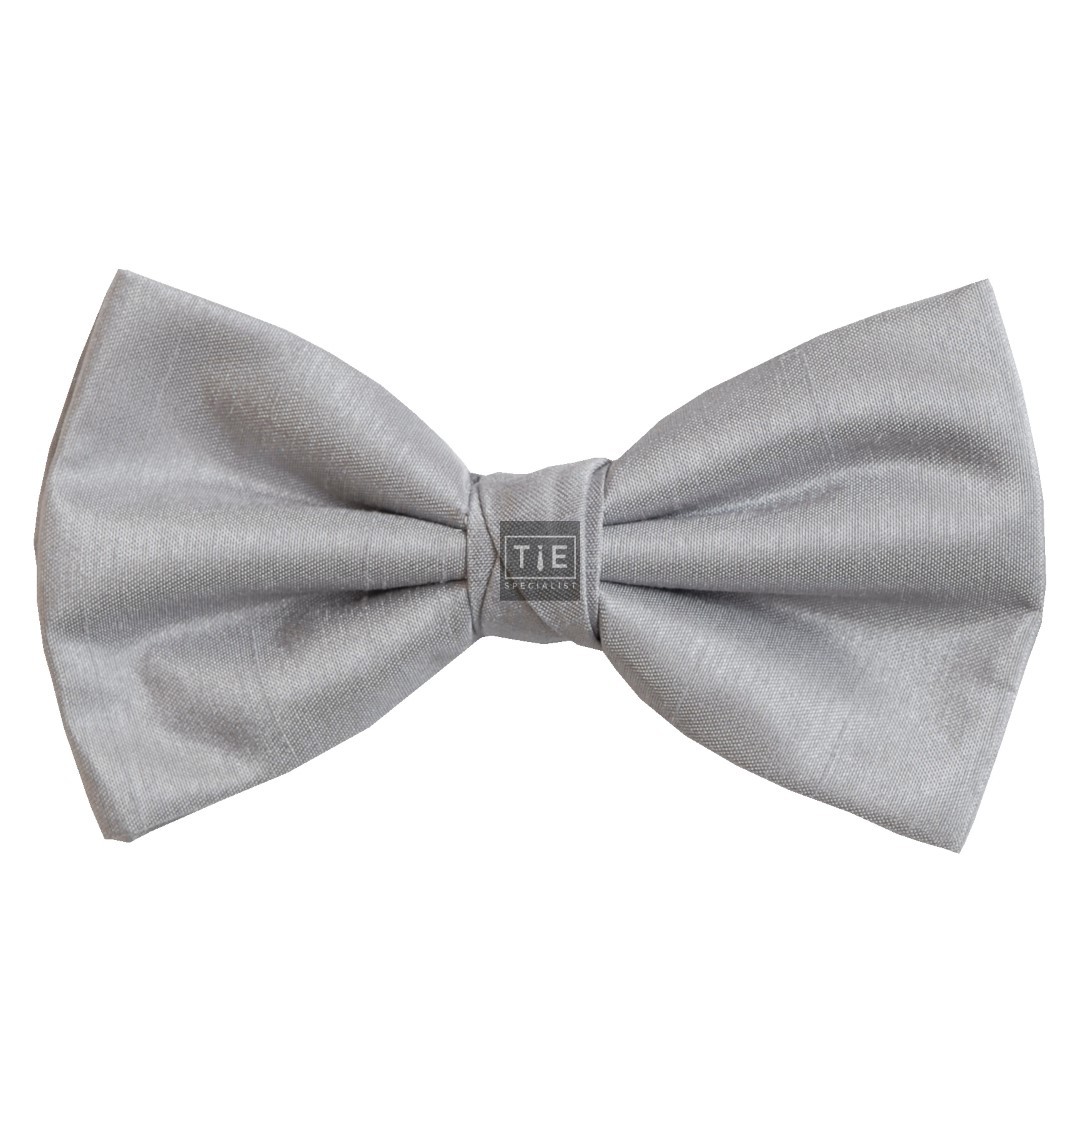 Silver Shantung Wedding Bow Tie #BB1866/2